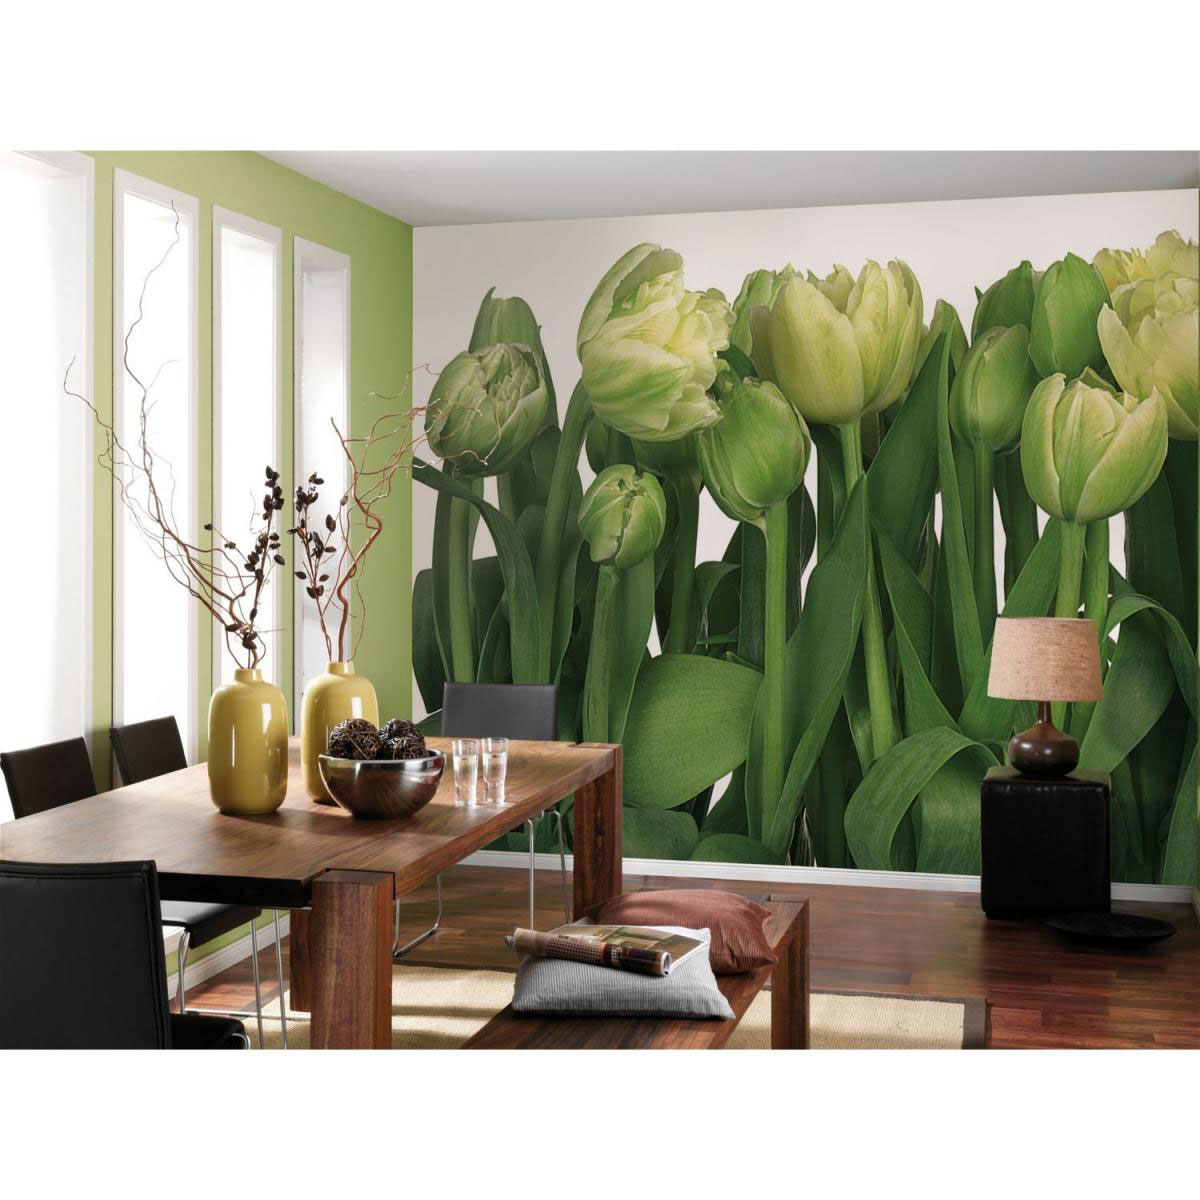 Papier-Fototapete „Tulips“, 8-teilig, 368x254 cm